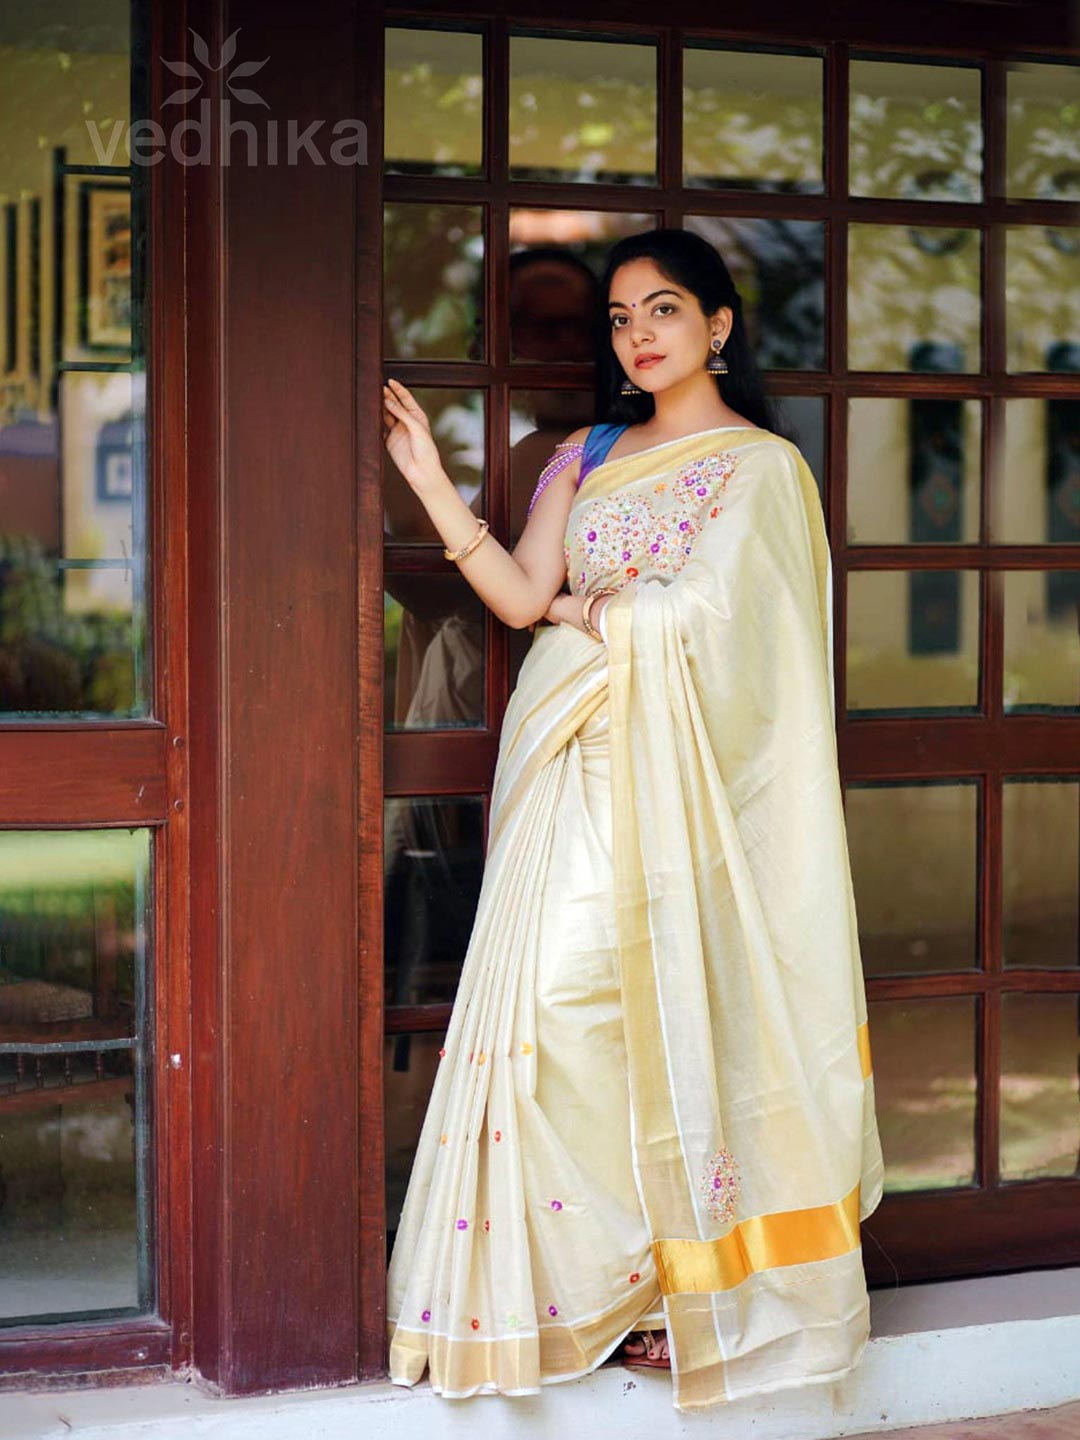 Fashion world: Kerala bride in Kerala Traditional Jewelry